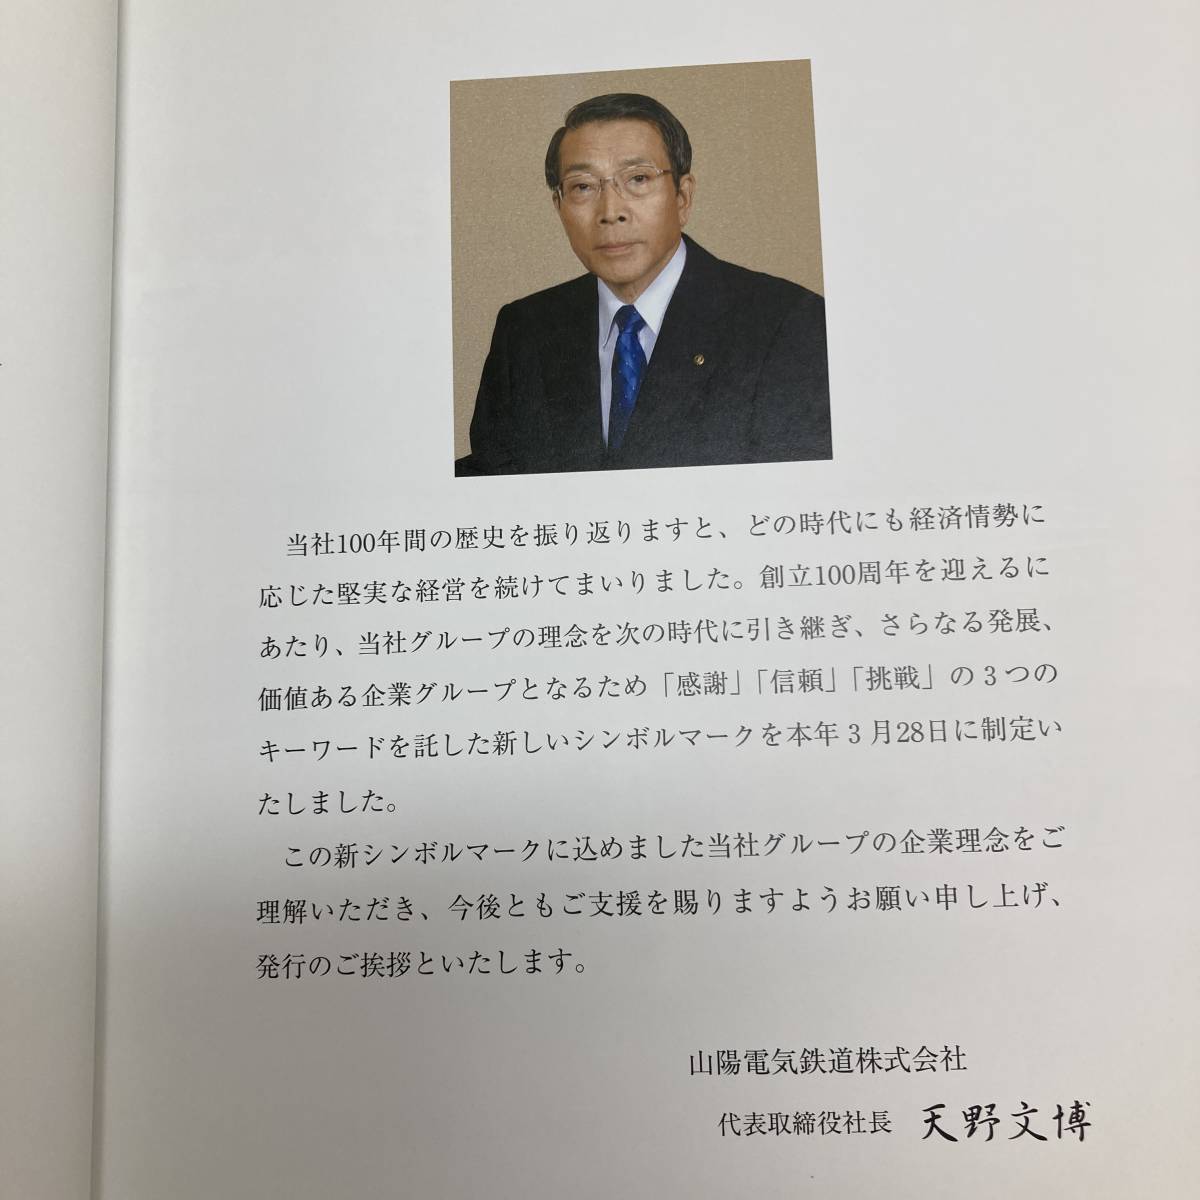 山陽電気鉄道百年史 山陽鉄道 社史 山陽電鉄 鉄道資料 420ページ 